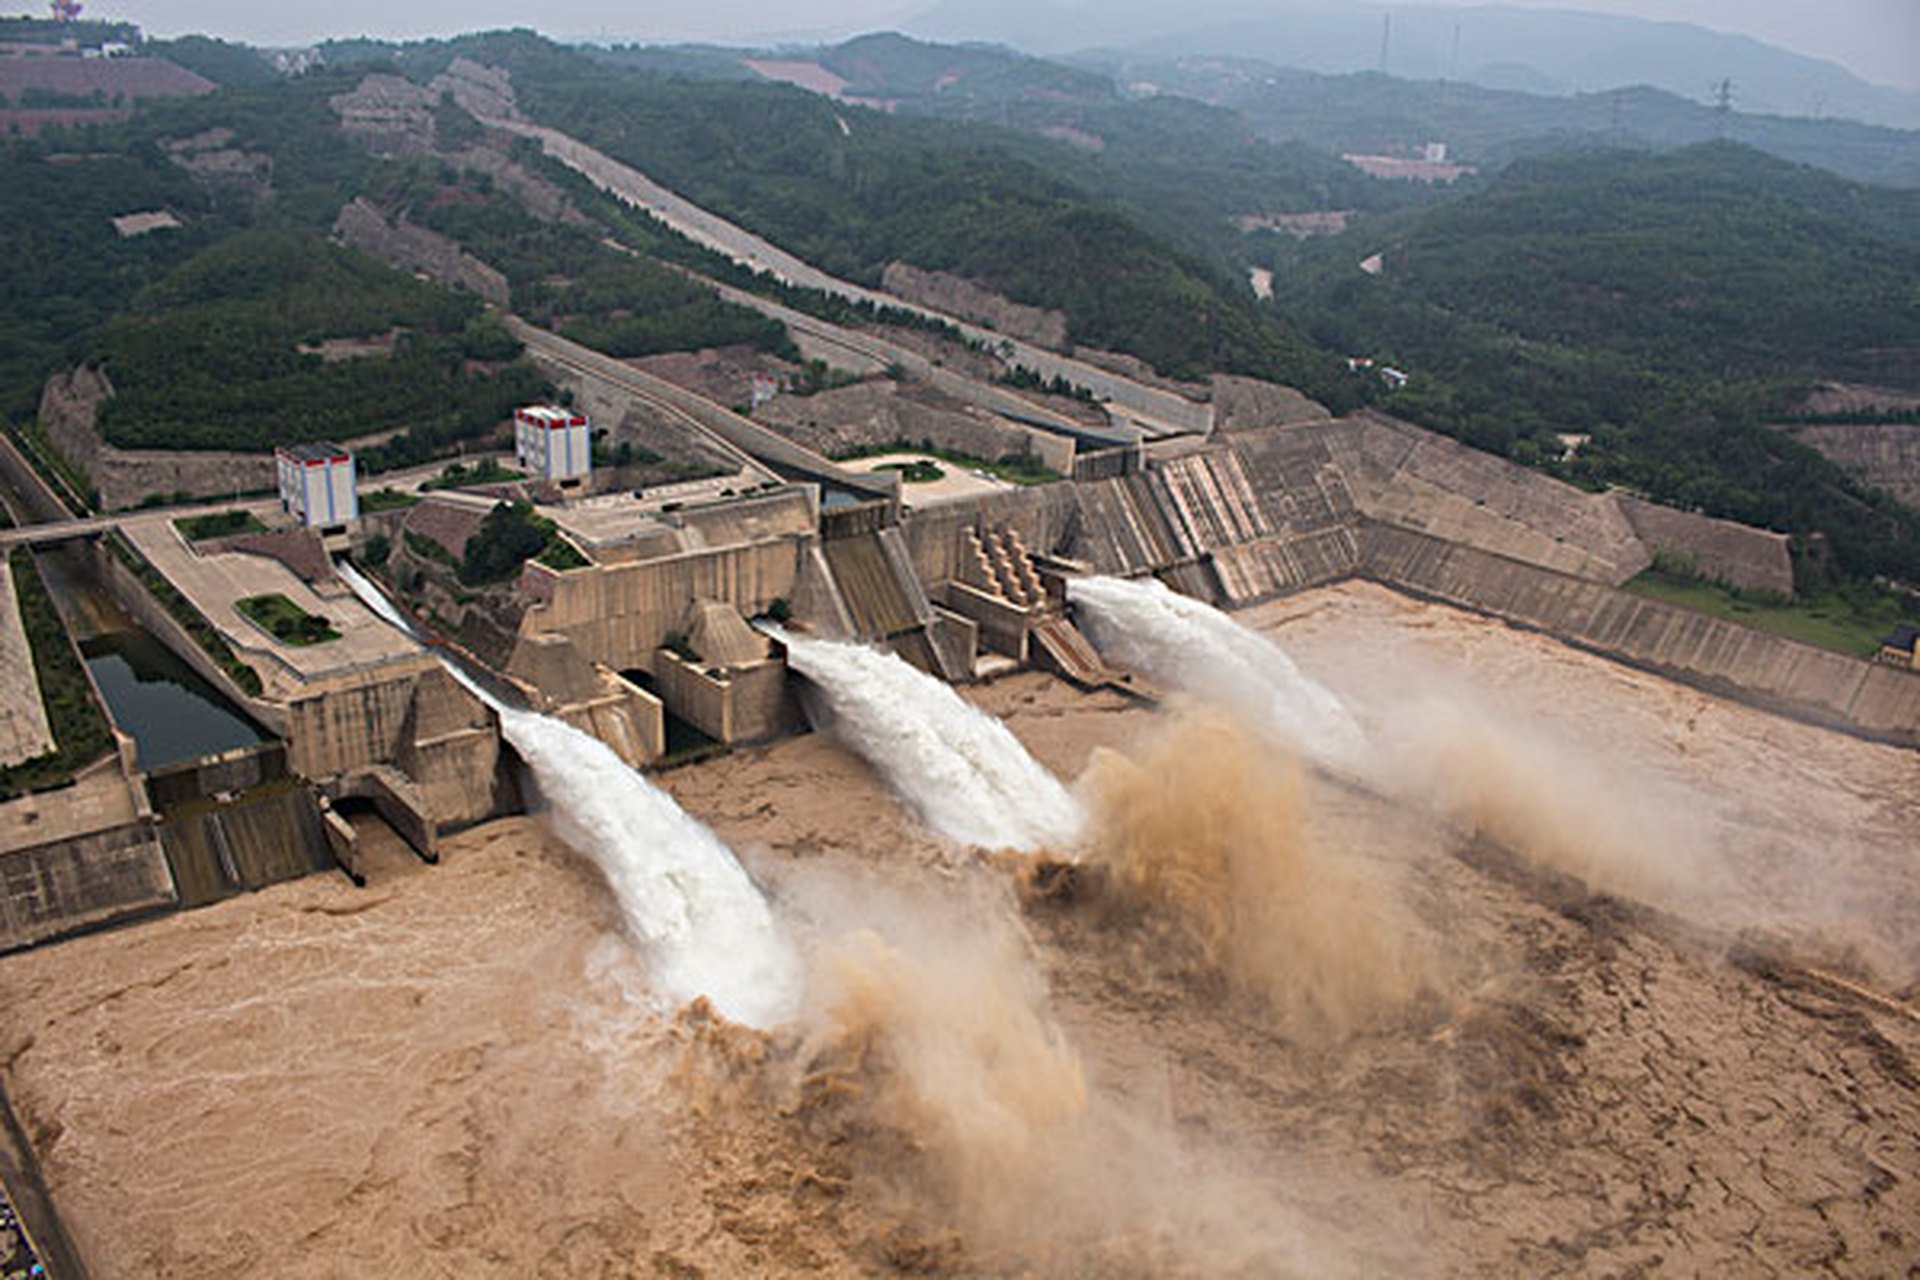 黄河小浪底水电站是黄河中下游最后一座大型水电站,位于河南省济源市